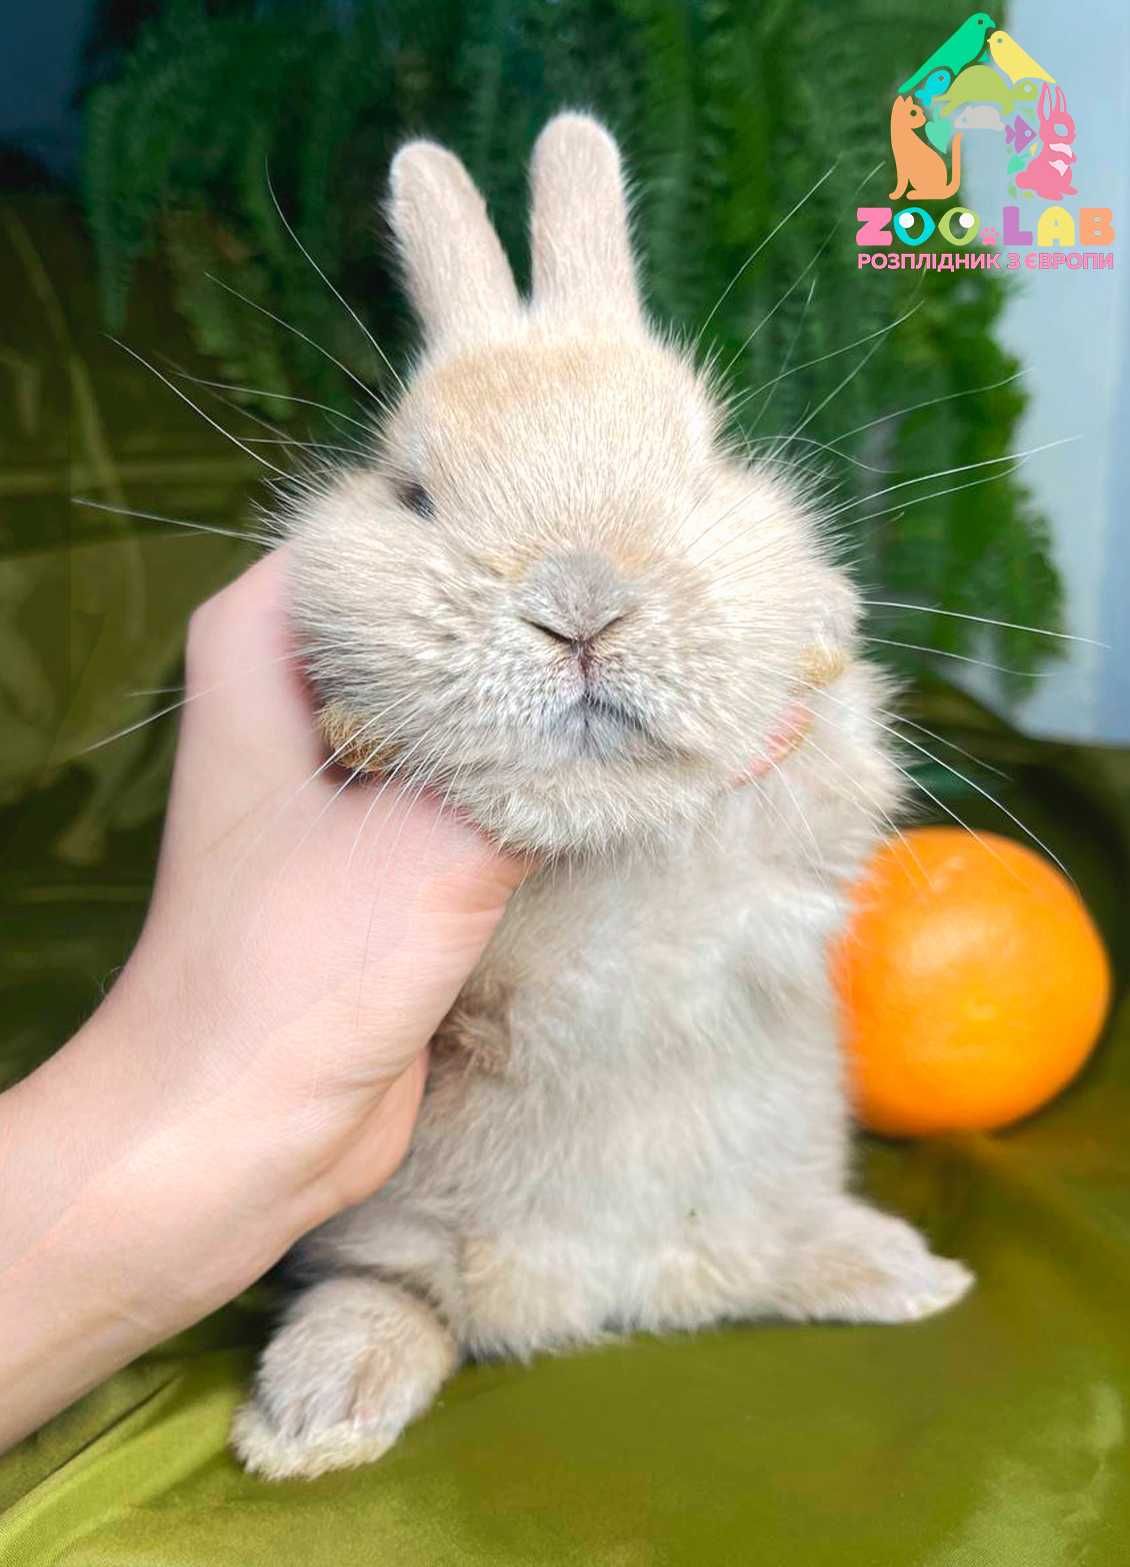 Нідерландський карлик, міні кролик декоративний, карликовий